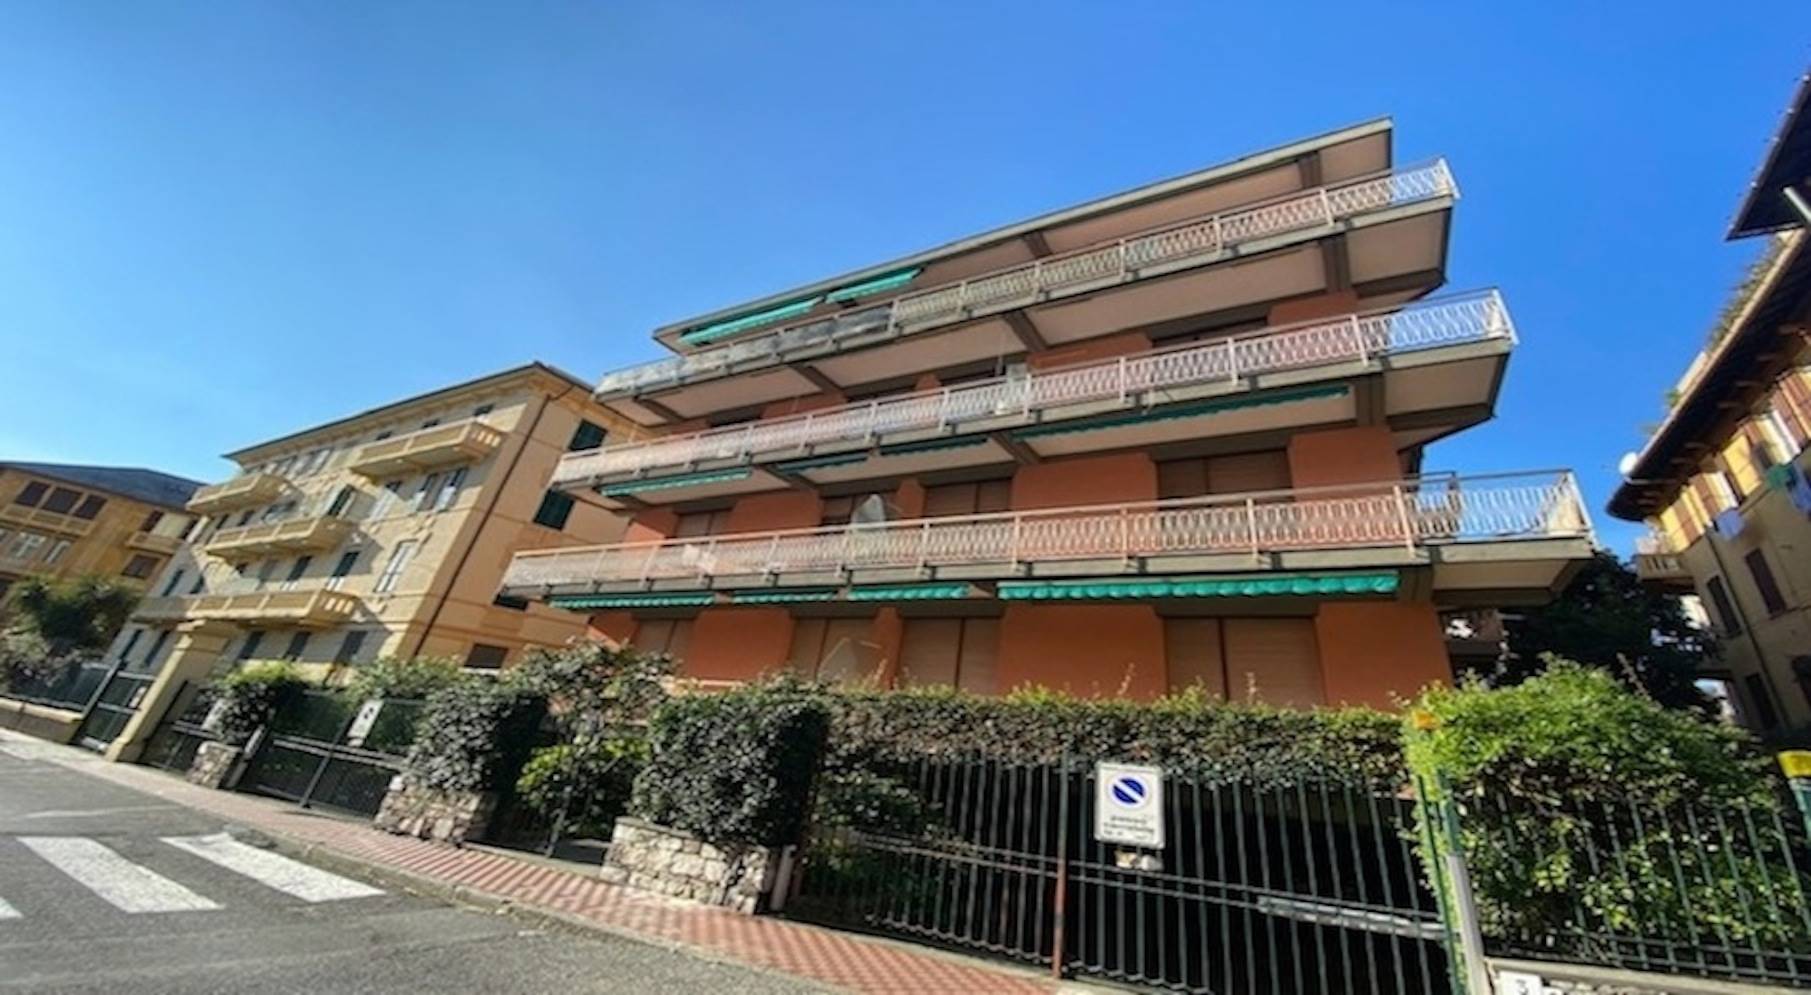 Appartamento in affitto a Santa Margherita Ligure, 3 locali, prezzo € 950 | PortaleAgenzieImmobiliari.it